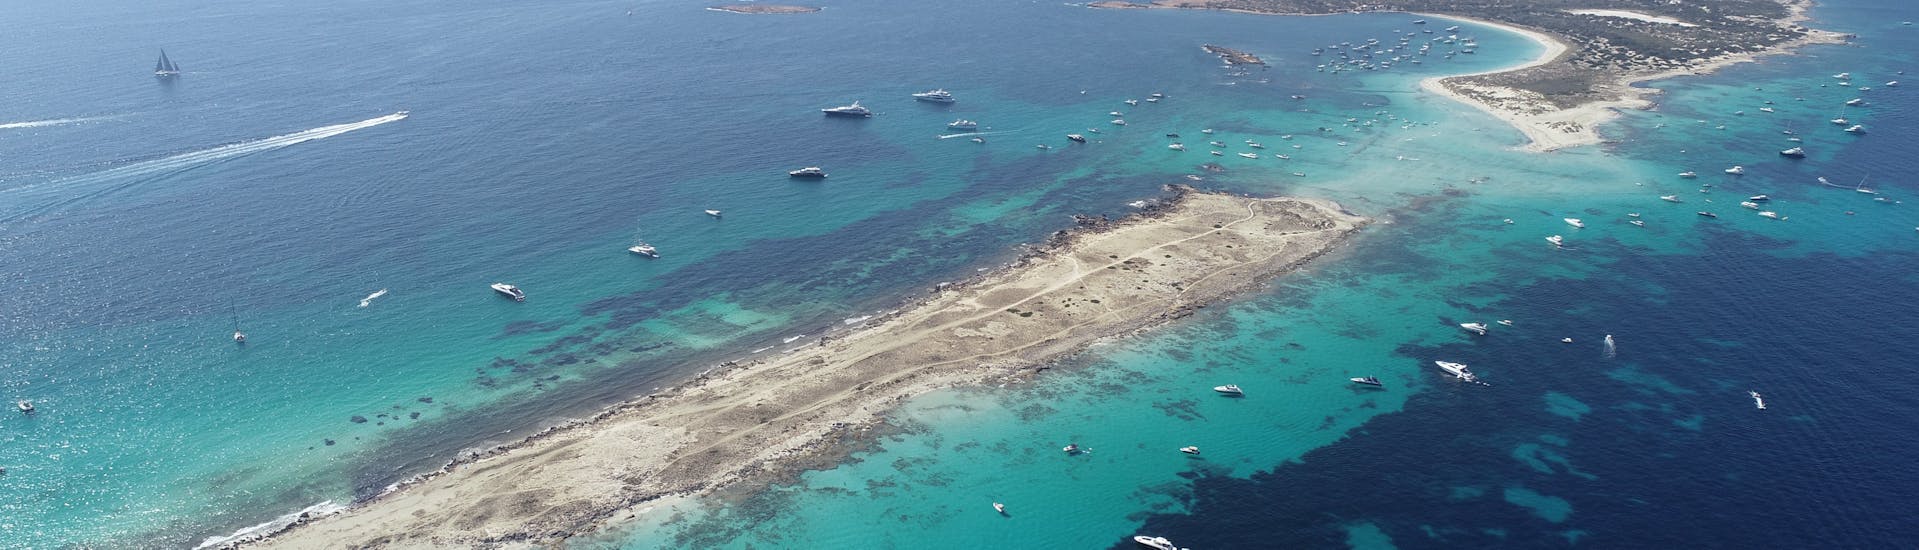 Blick auf Formenteras Landschaft von einer Katamaran-Tour von Ibiza nach Formentera mit offener Bar.